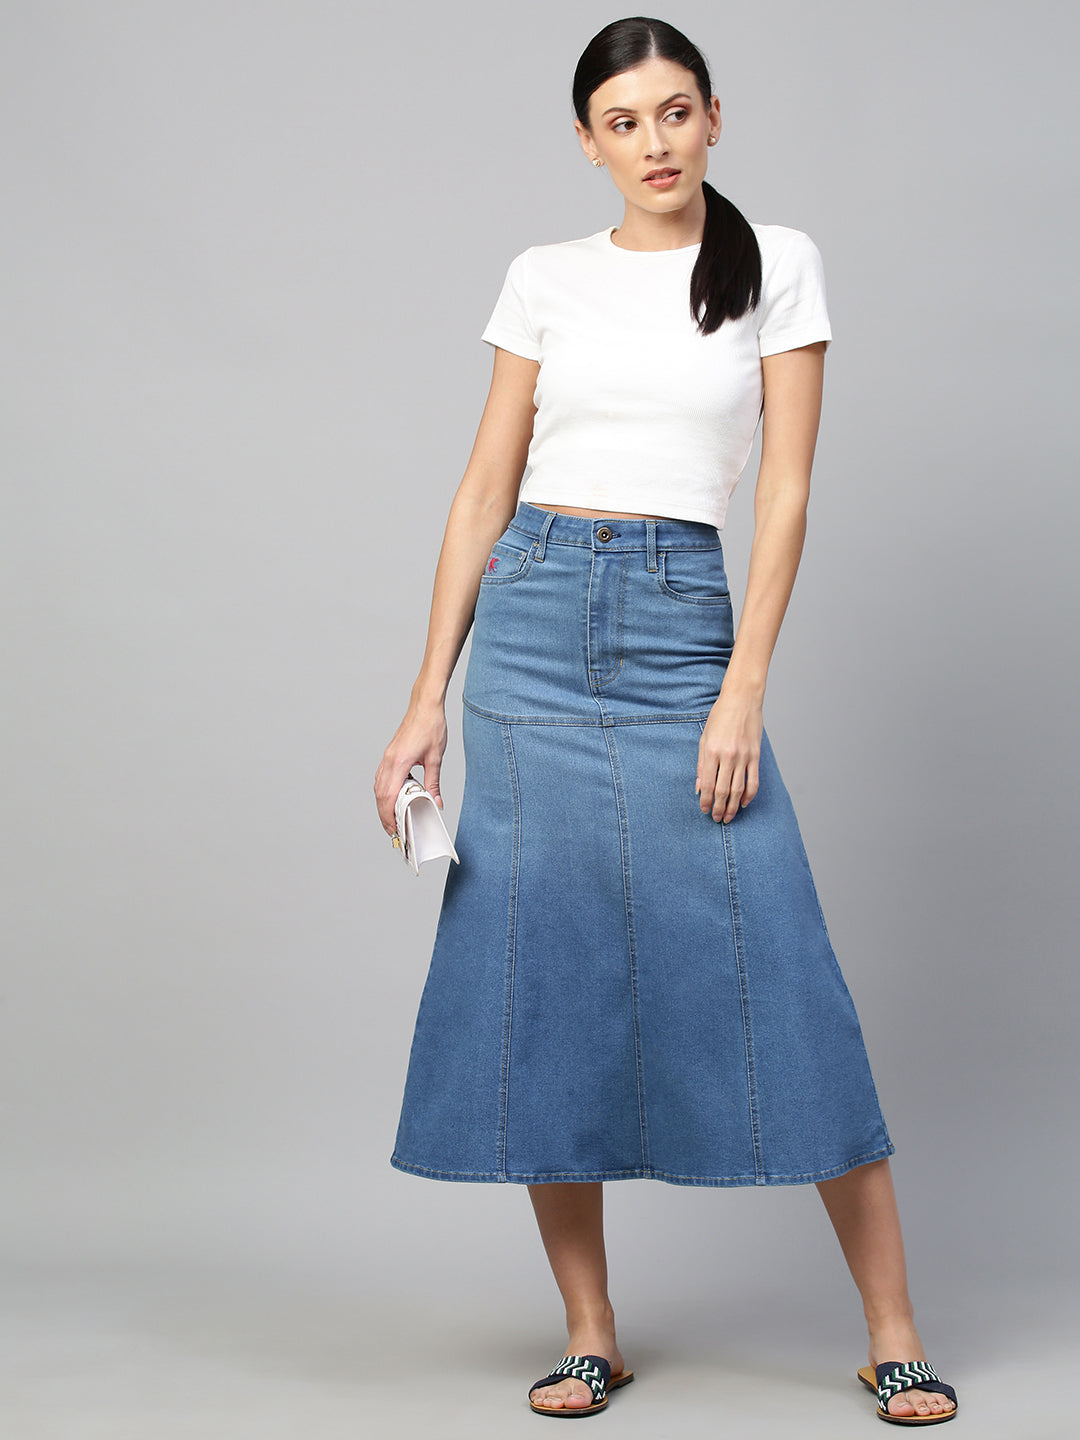 Denim Skirt - Buy Denim Skirt online in India